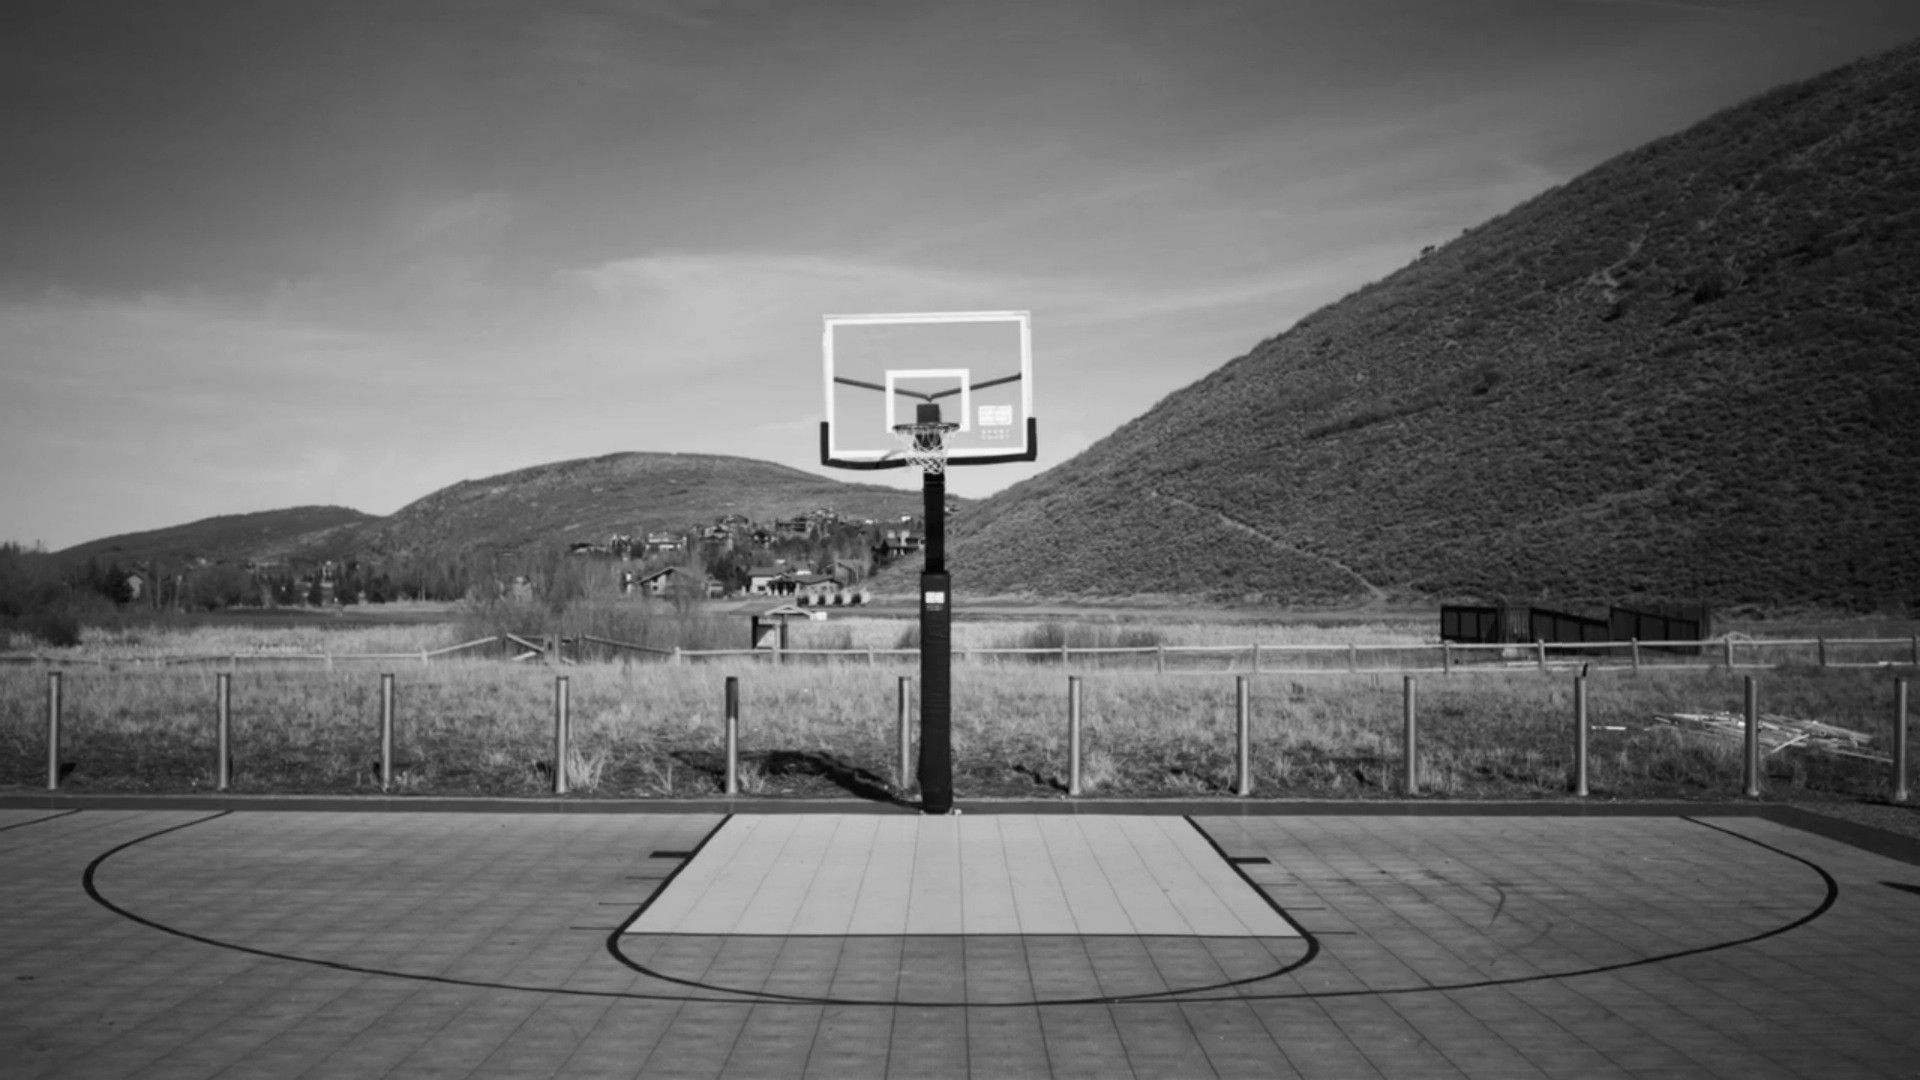 Basketball Court baketball esports HD phone wallpaper  Peakpx